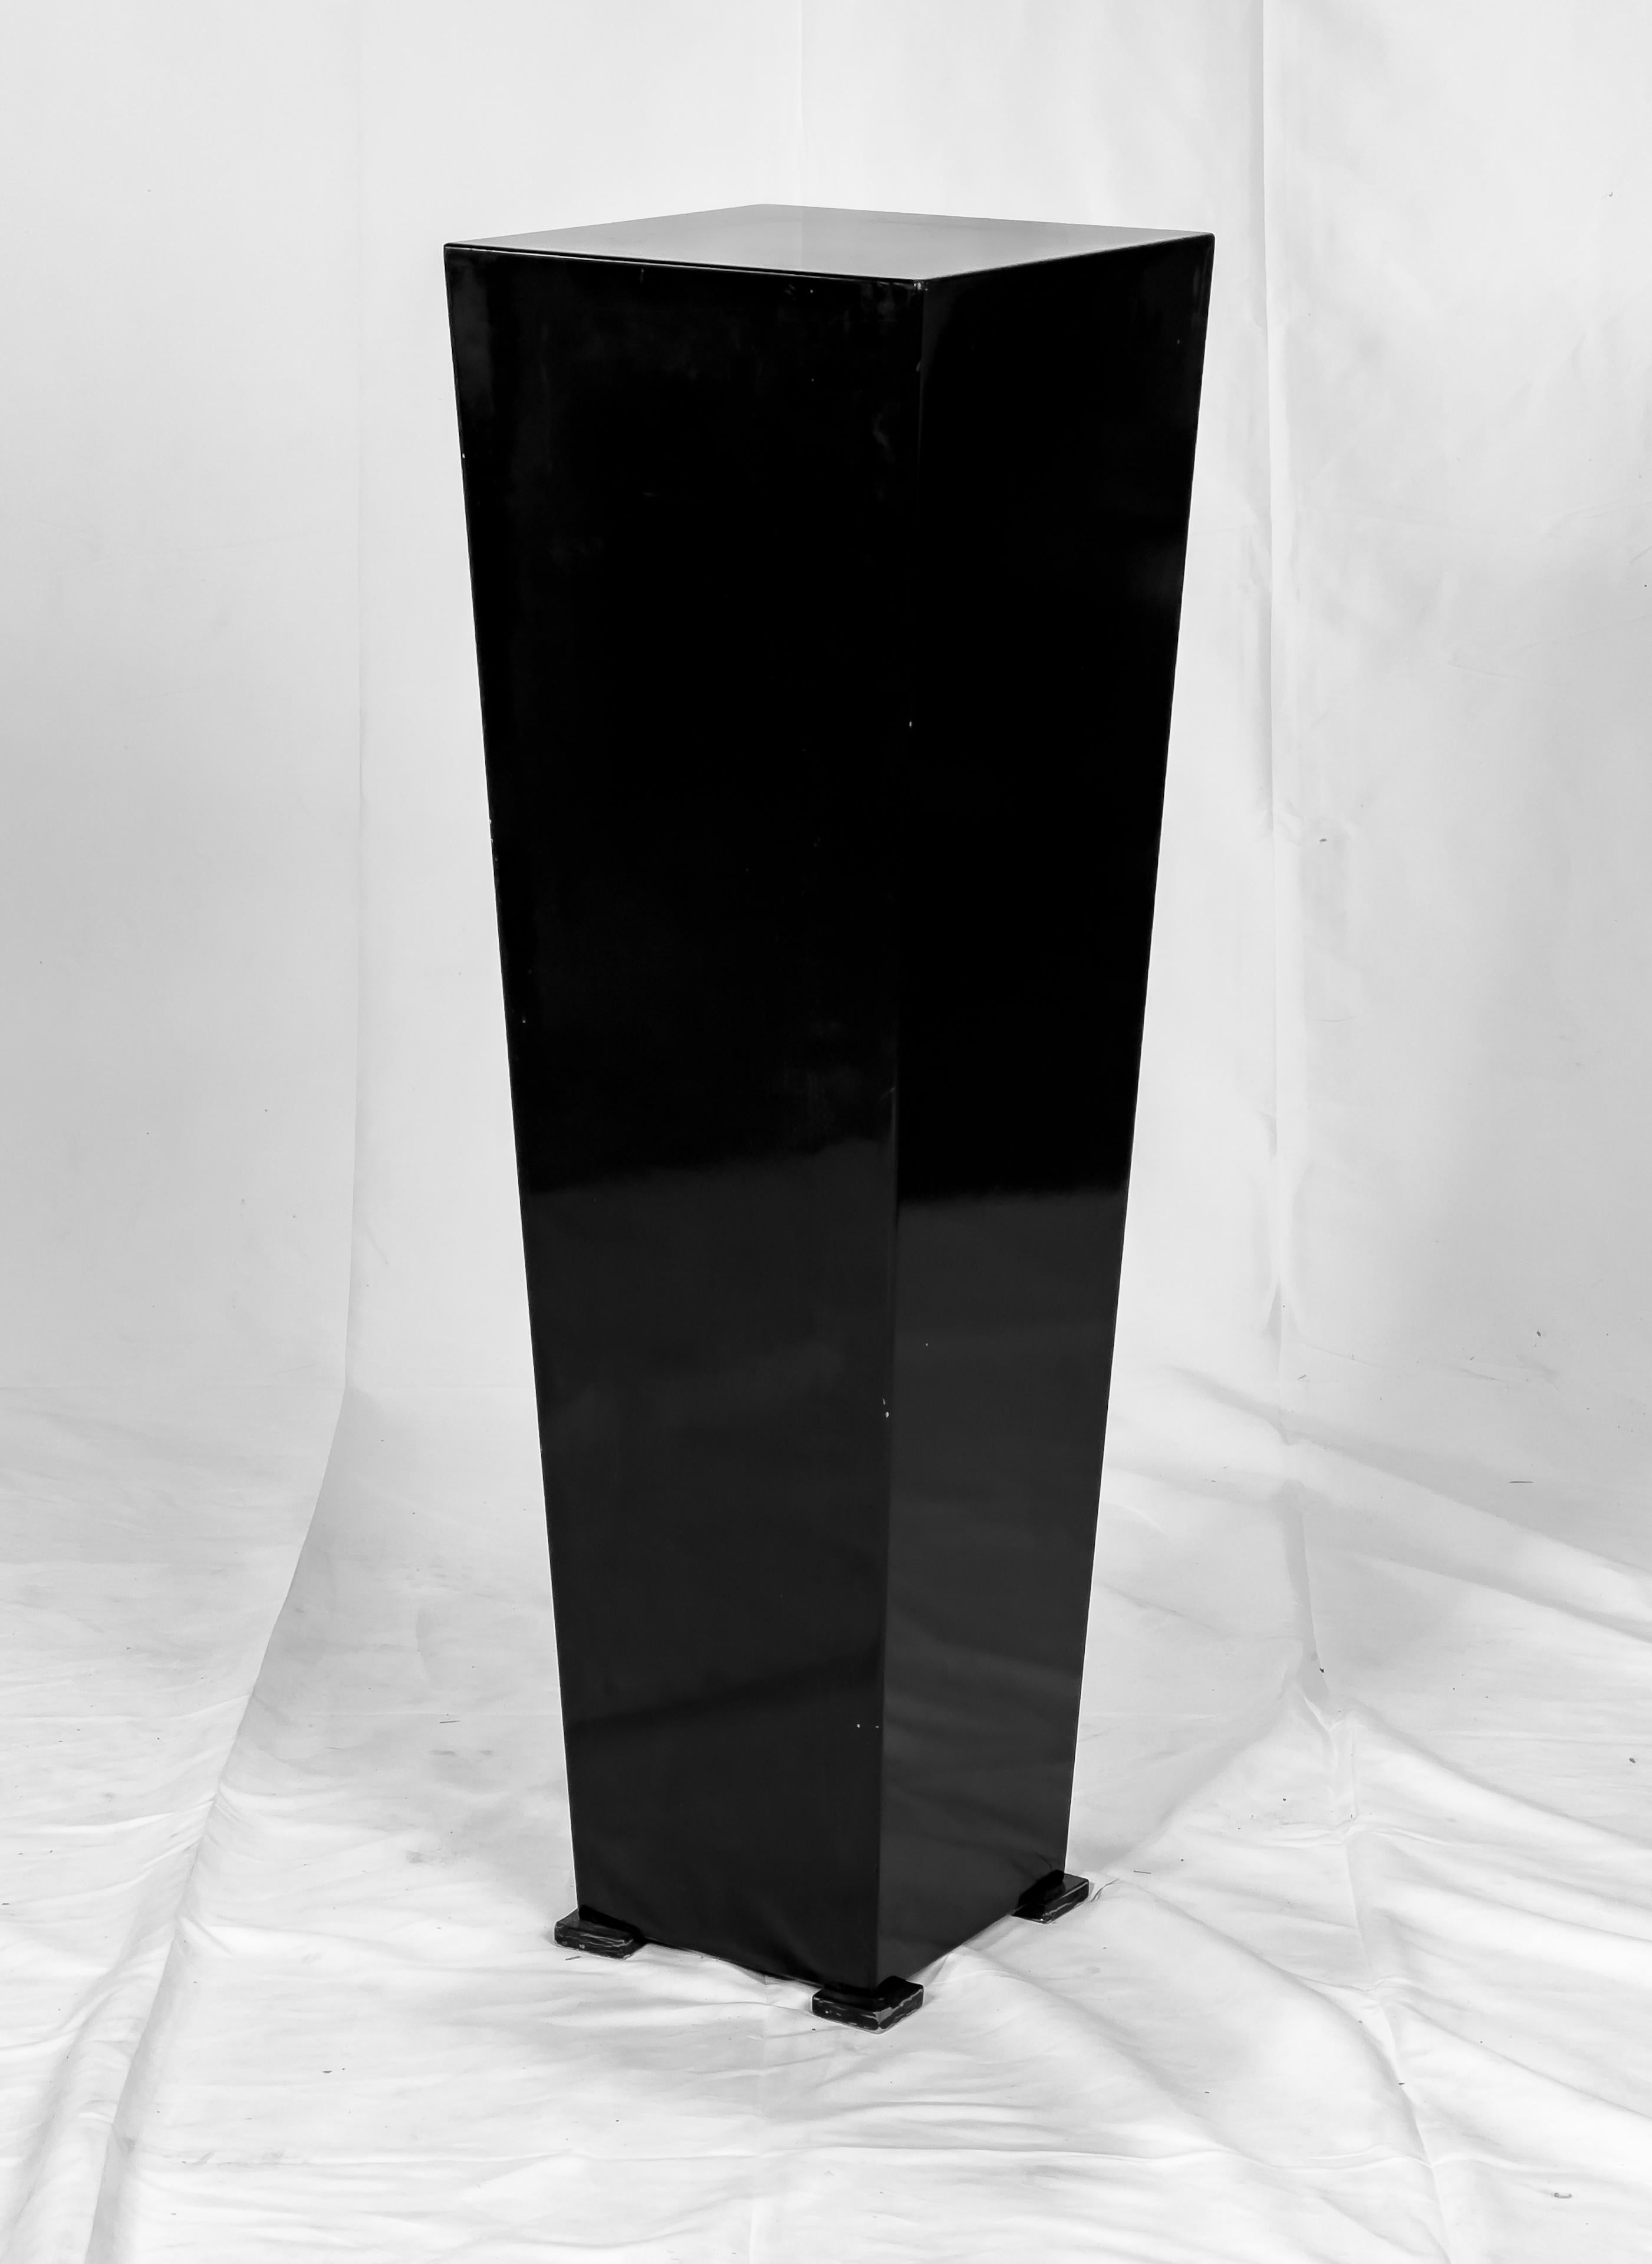 Dark Reflections, eine Skulptur von Mac Whitney (geb. 1936), einem angesehenen texanischen Künstler, der vor allem für seine monumentalen Skulpturen bekannt ist. Es handelt sich um eine schwarz polierte Acrylskulptur einer abstrakten Form auf einem